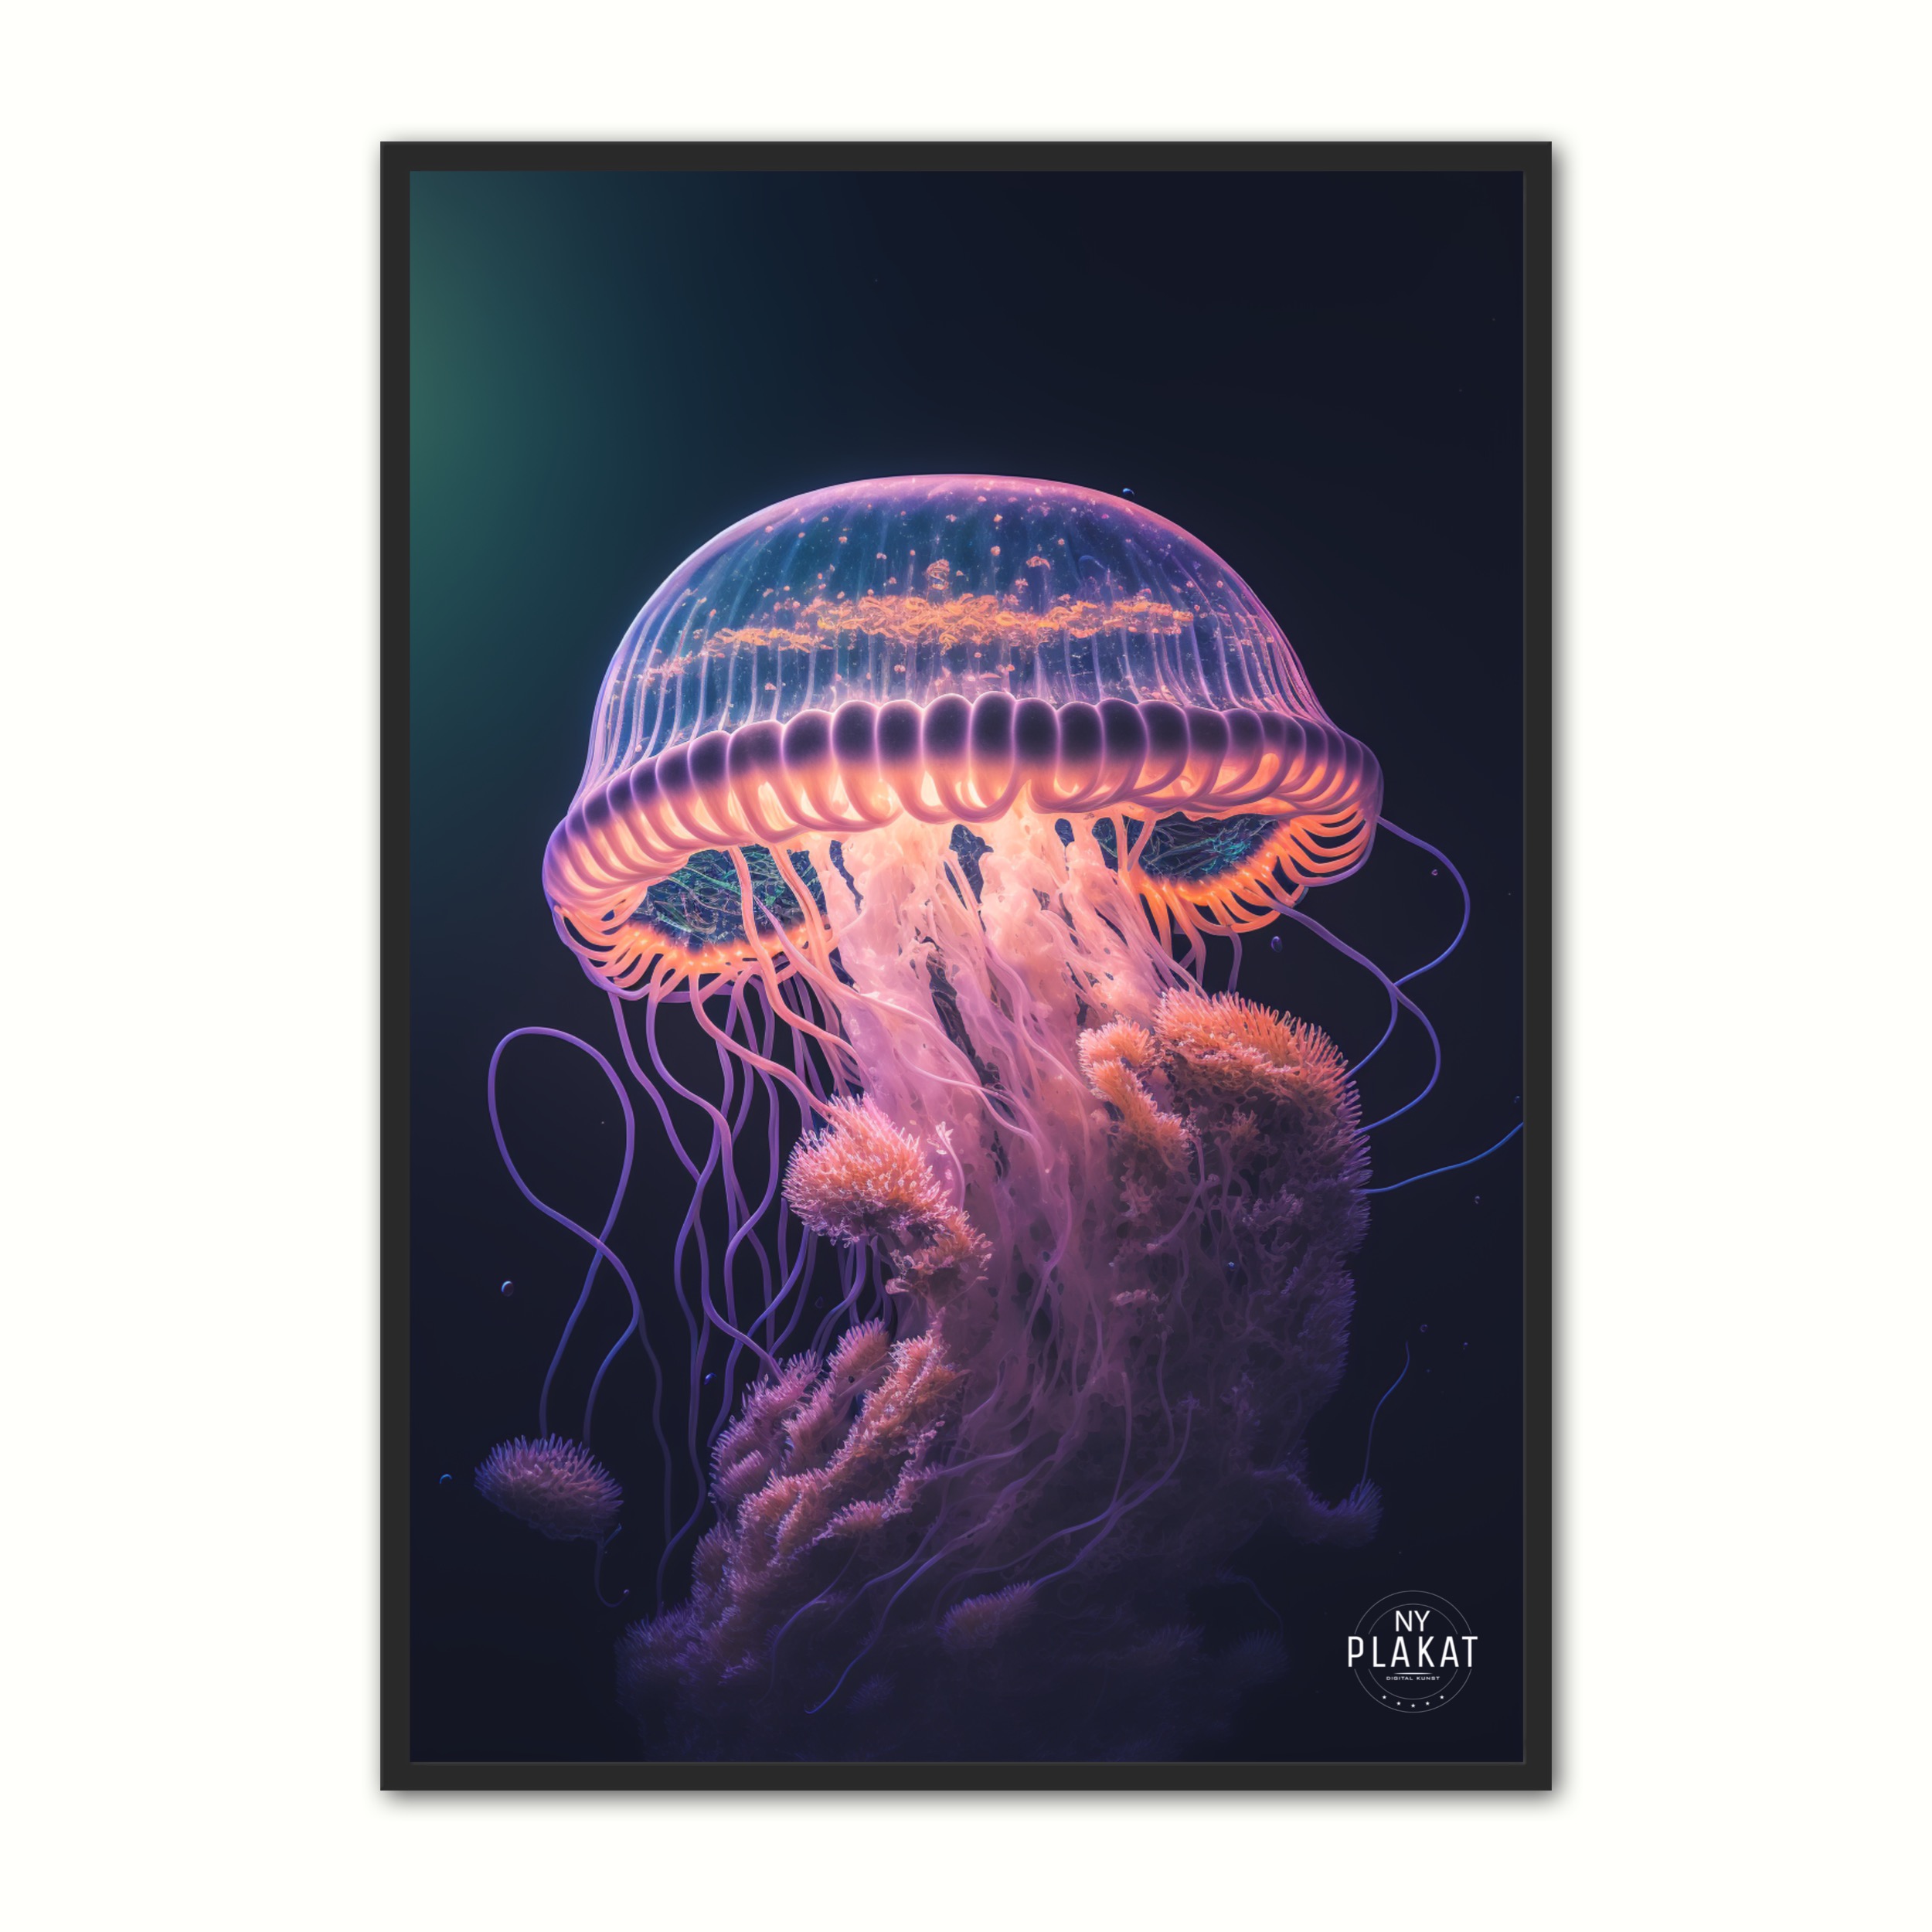 Se Jellyfish plakat No. 1 21 x 29,7 cm (A4) hos Nyplakat.dk